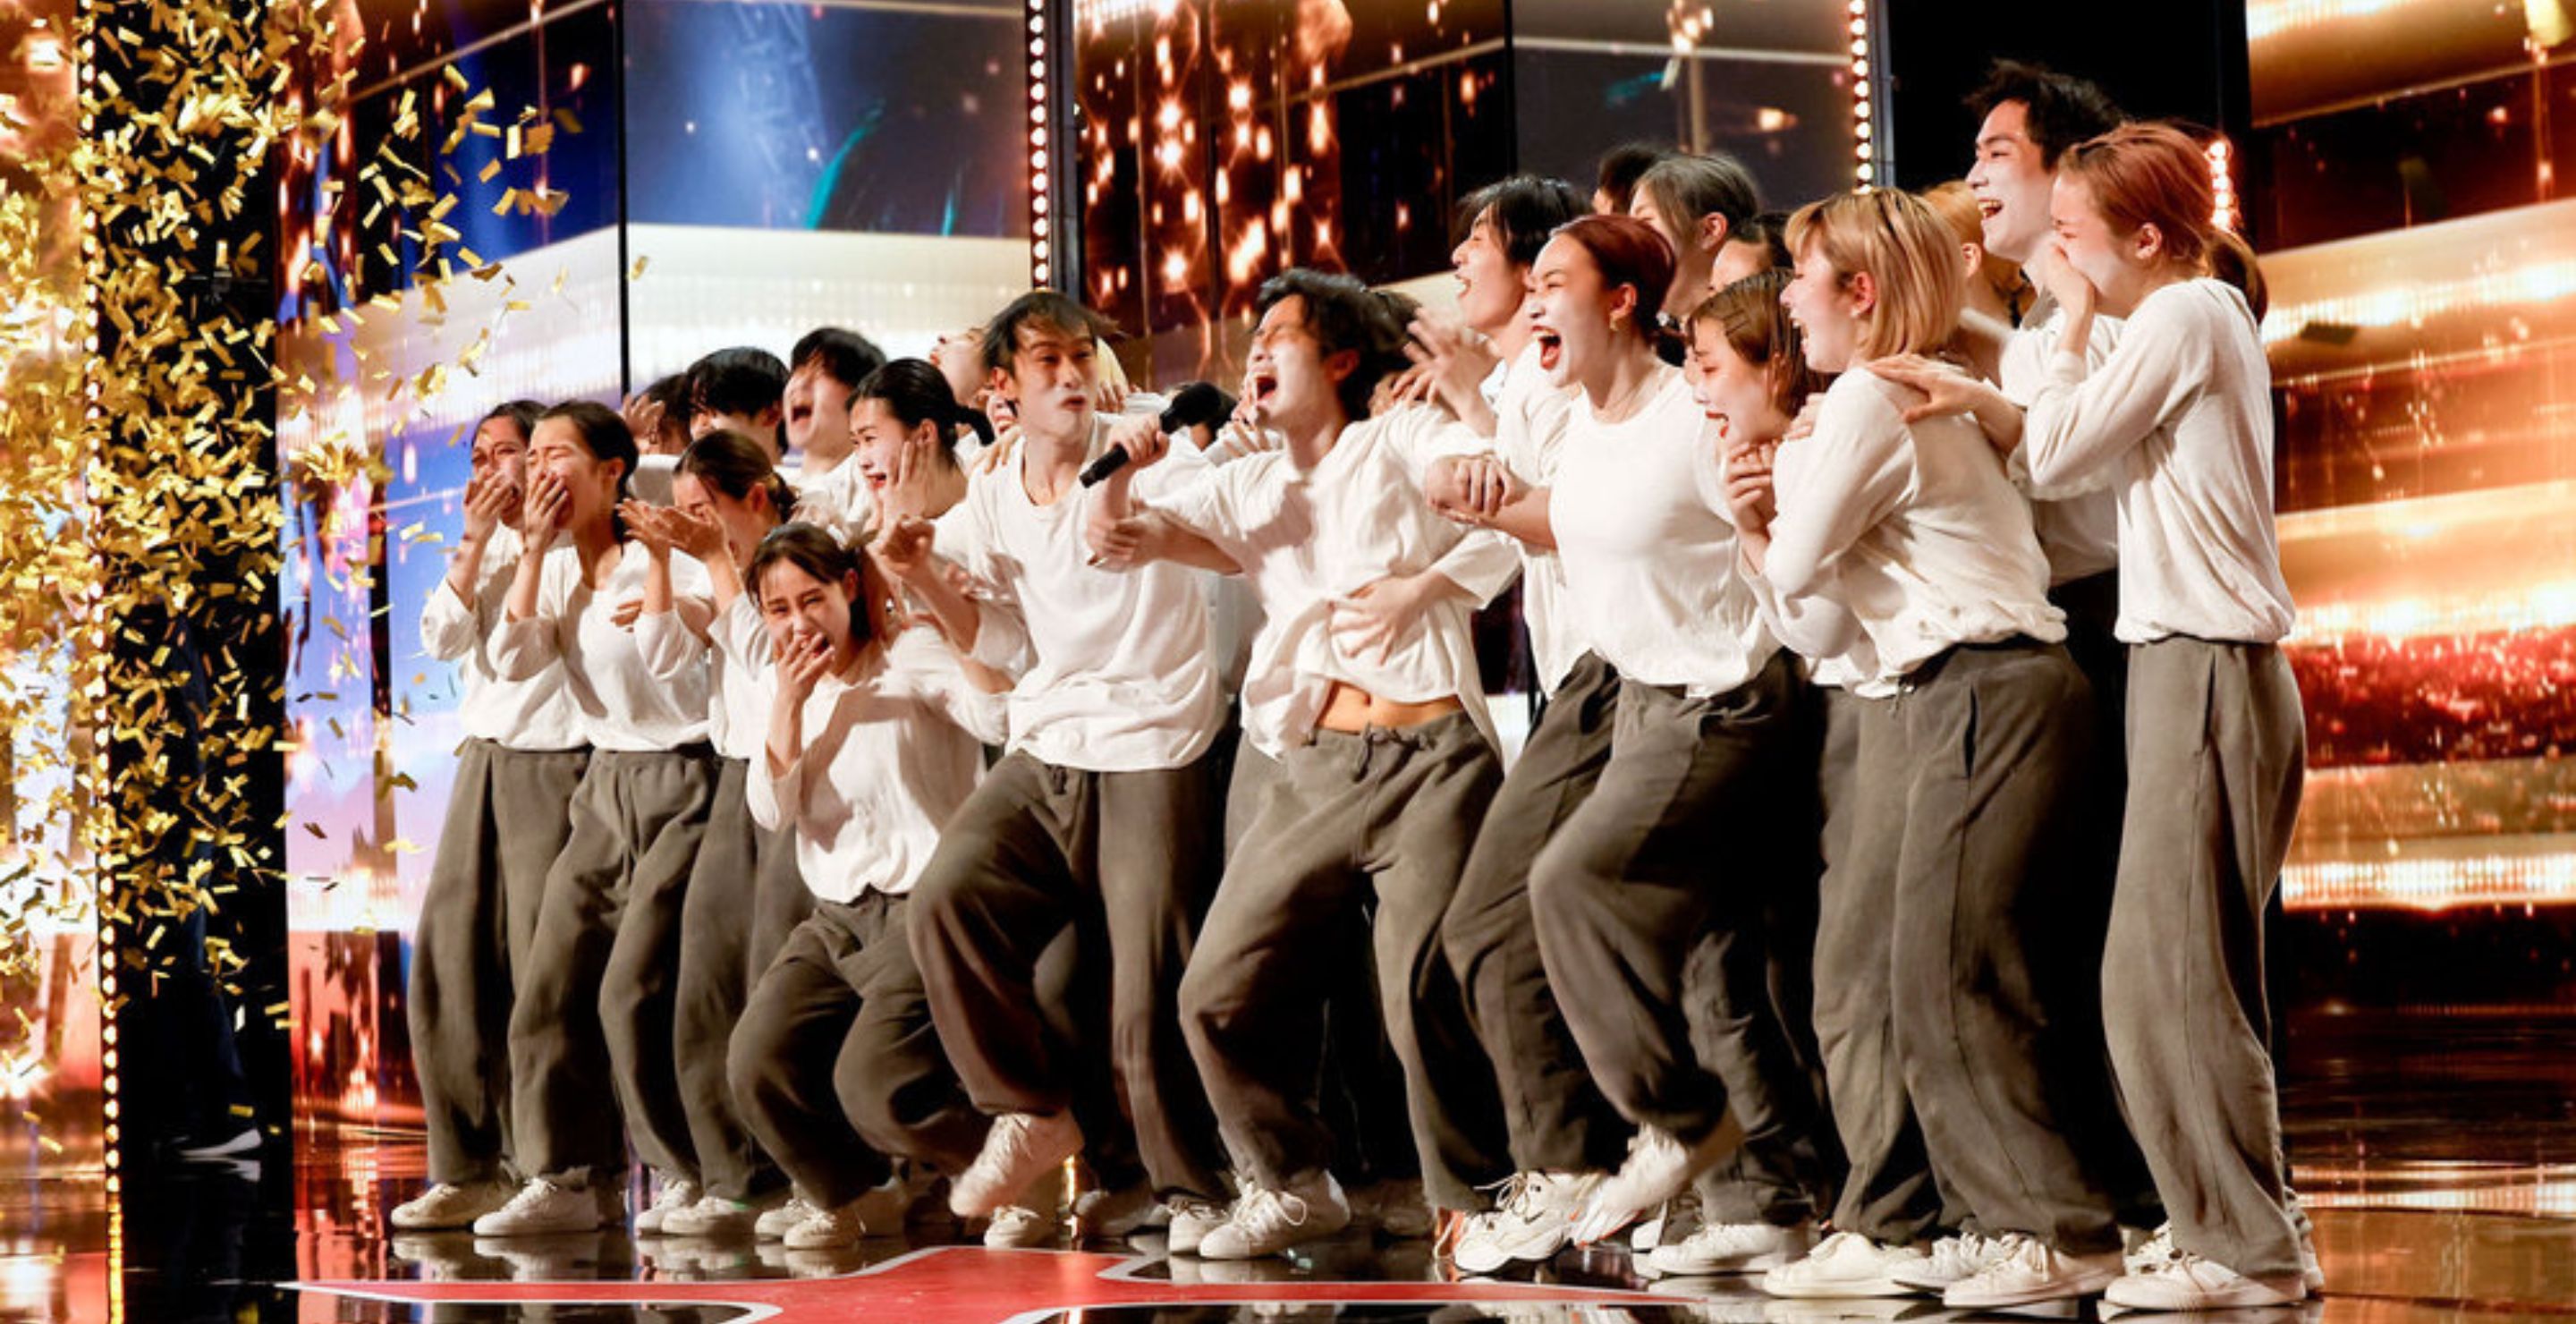 America's Got Talent': Dance Group Earns Final Golden Buzzer